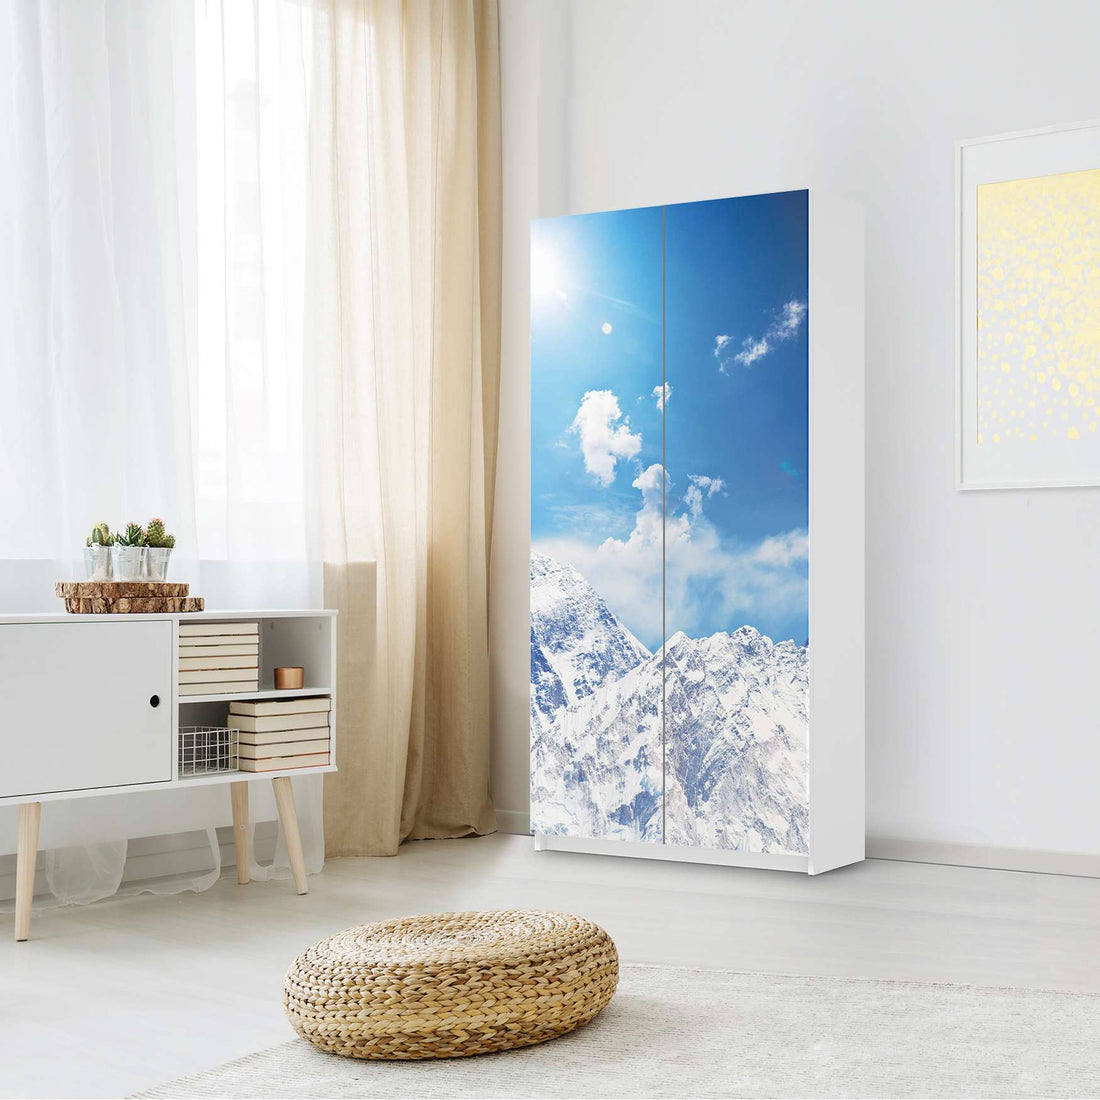 Klebefolie für Möbel Everest - IKEA Pax Schrank 201 cm Höhe - 2 Türen - Schlafzimmer